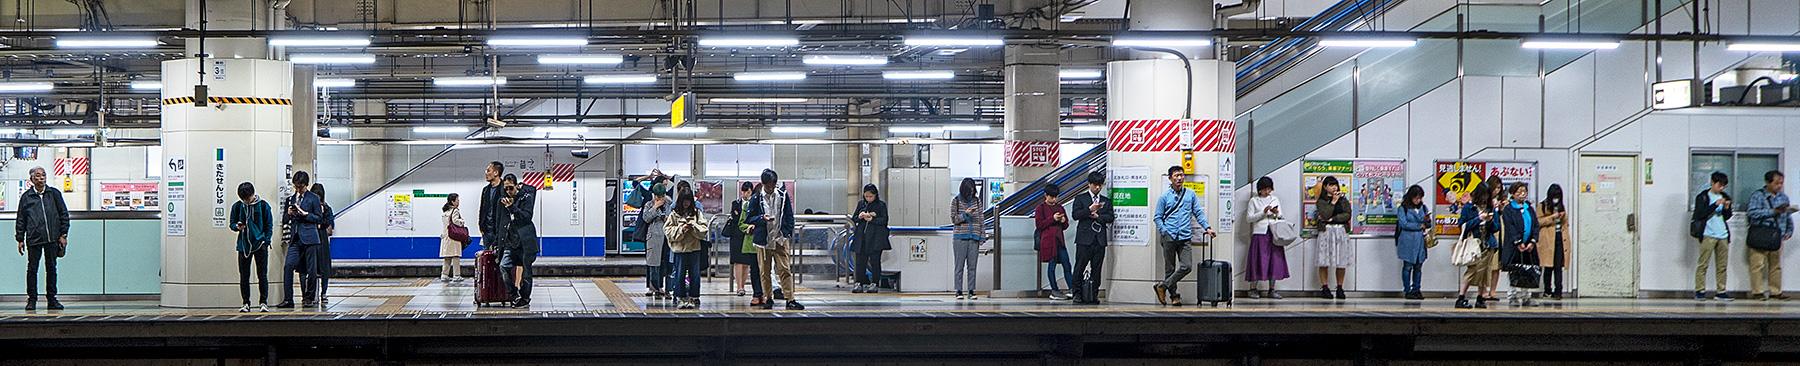 Menschen warten an der U-Bahn Station in Tokyo